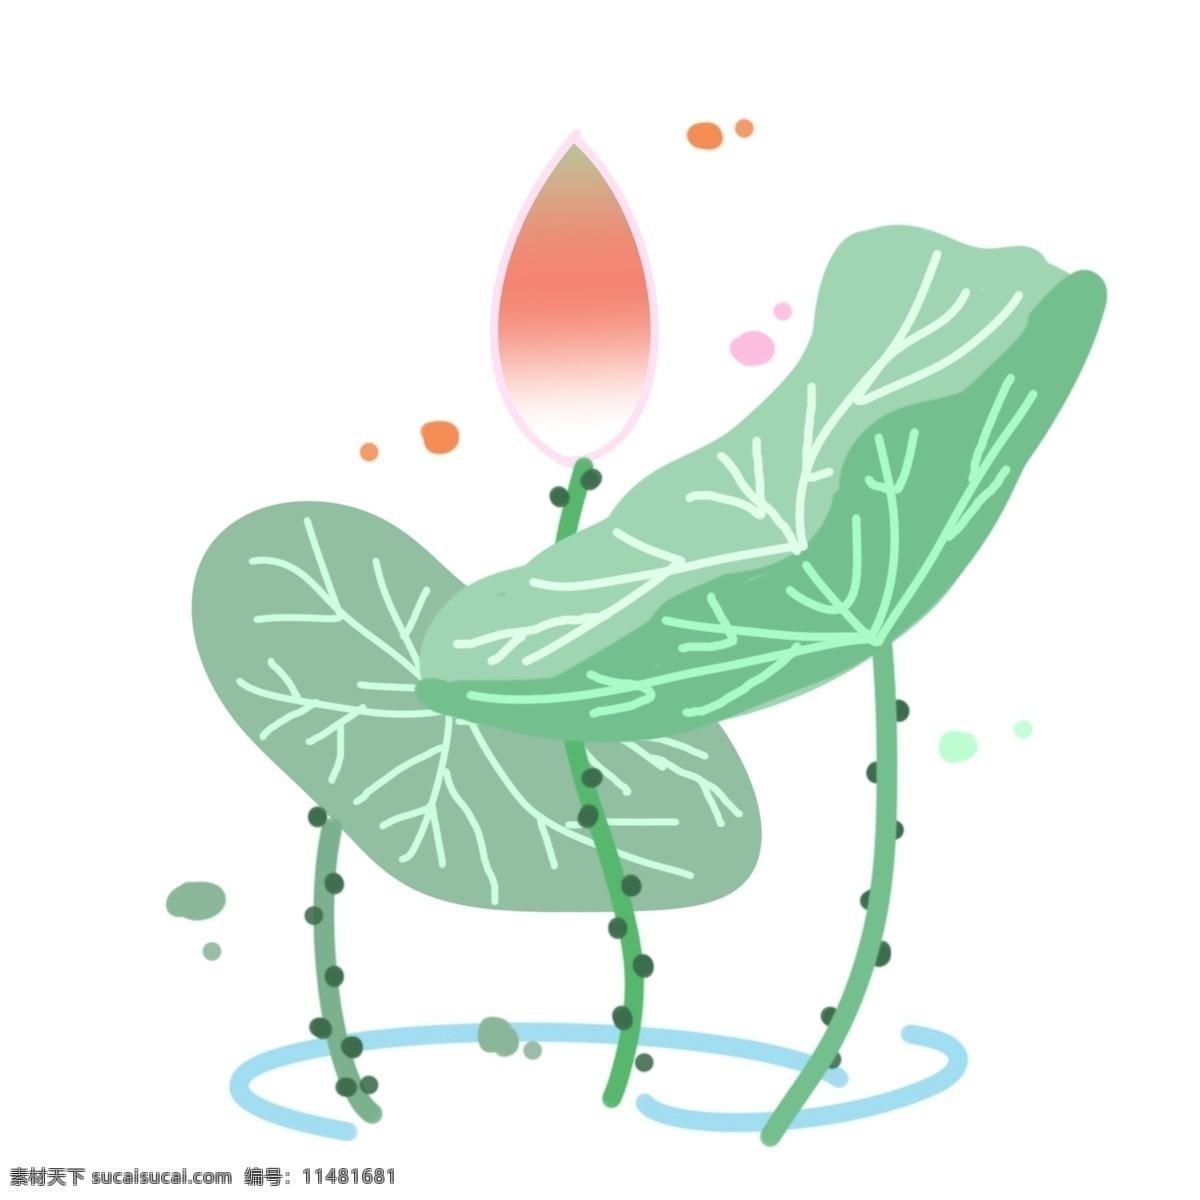 创意 荷花 装饰 插画 创意荷花 绿色的荷叶 漂亮的荷花 立体荷花 卡通荷花 春季荷花 植物装饰